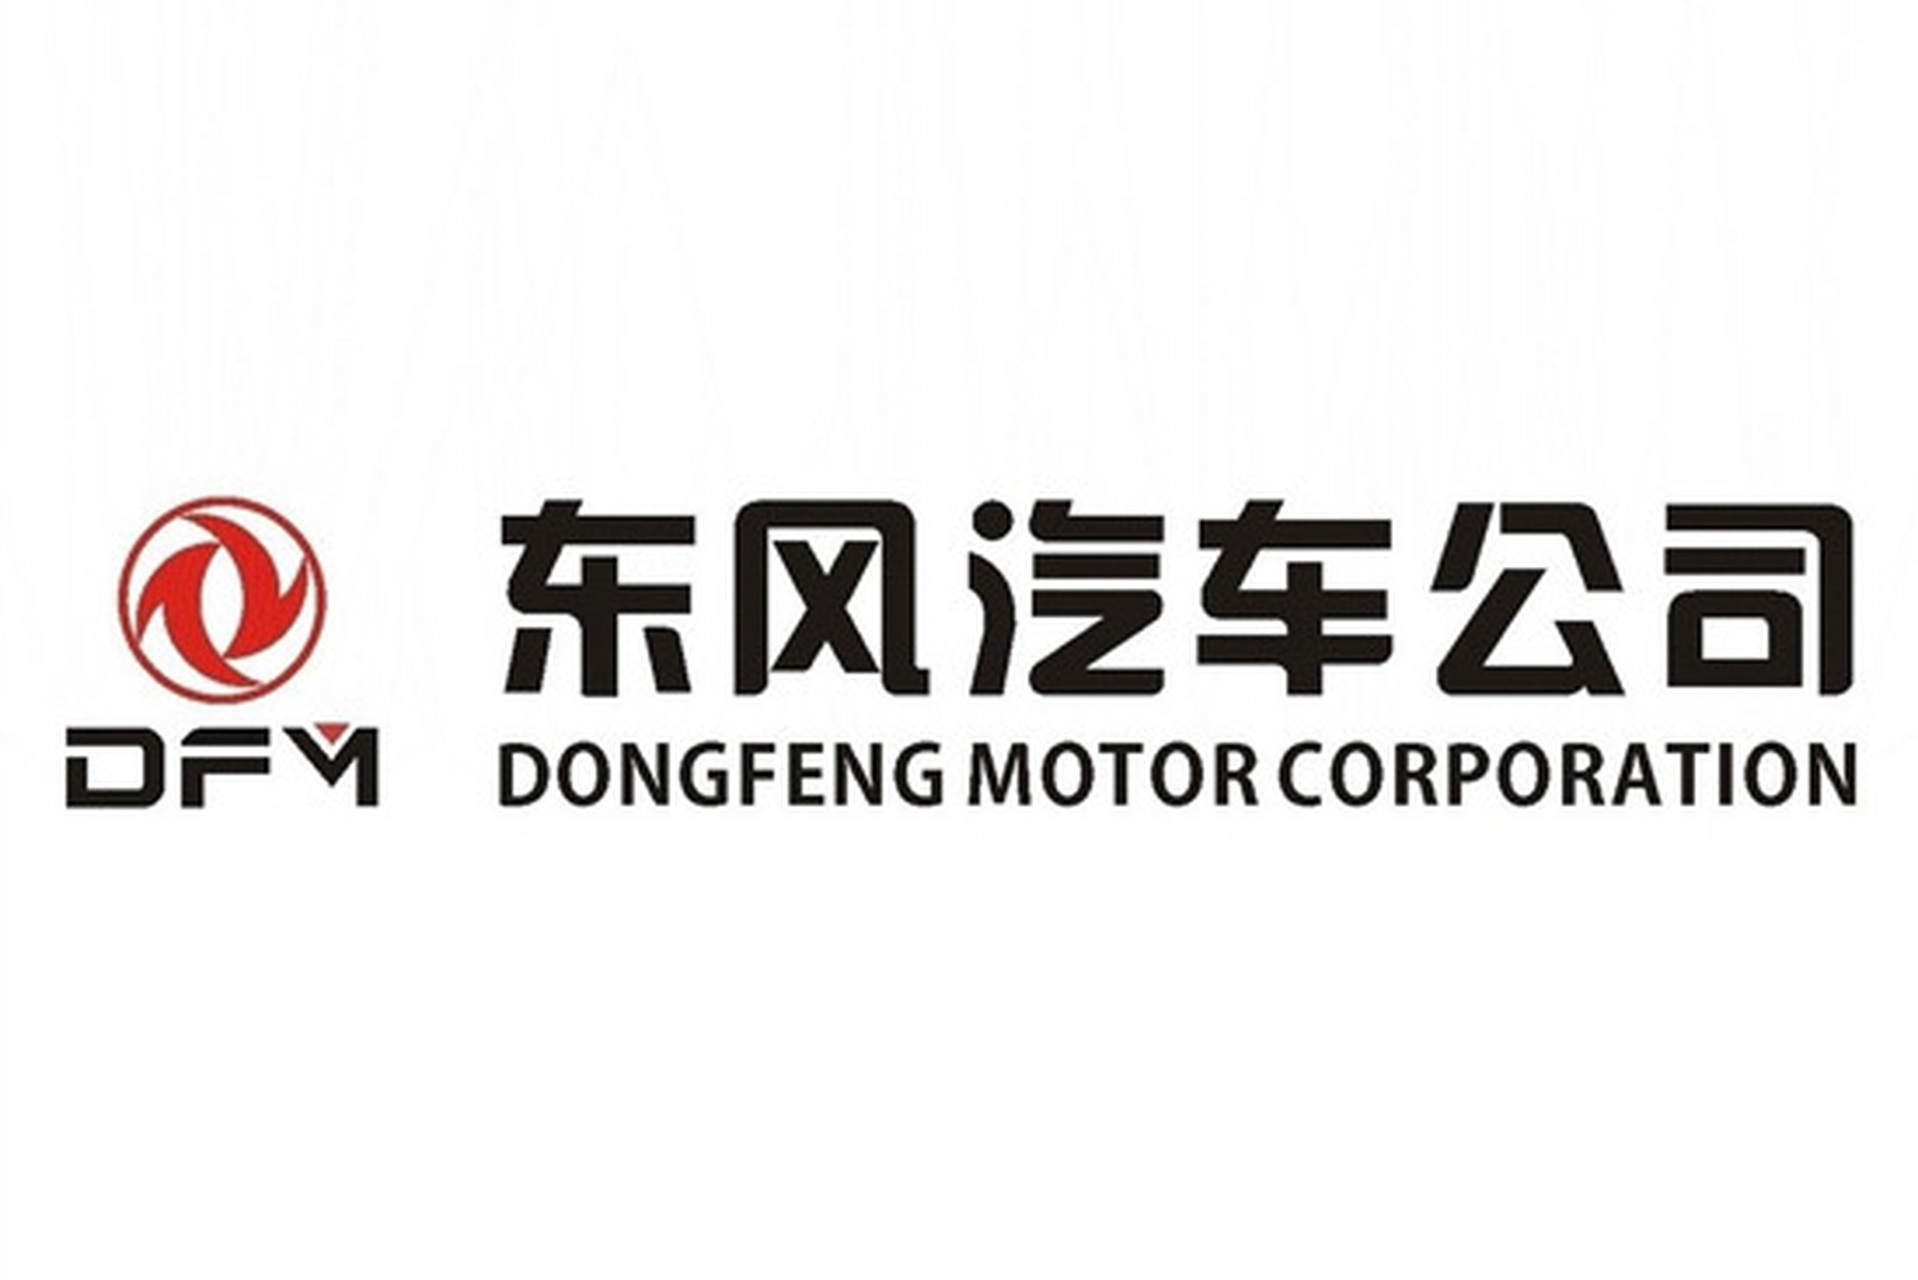 7月22日,东风汽车集团有限公司决定向郑州红十字会捐款2300万元,支援